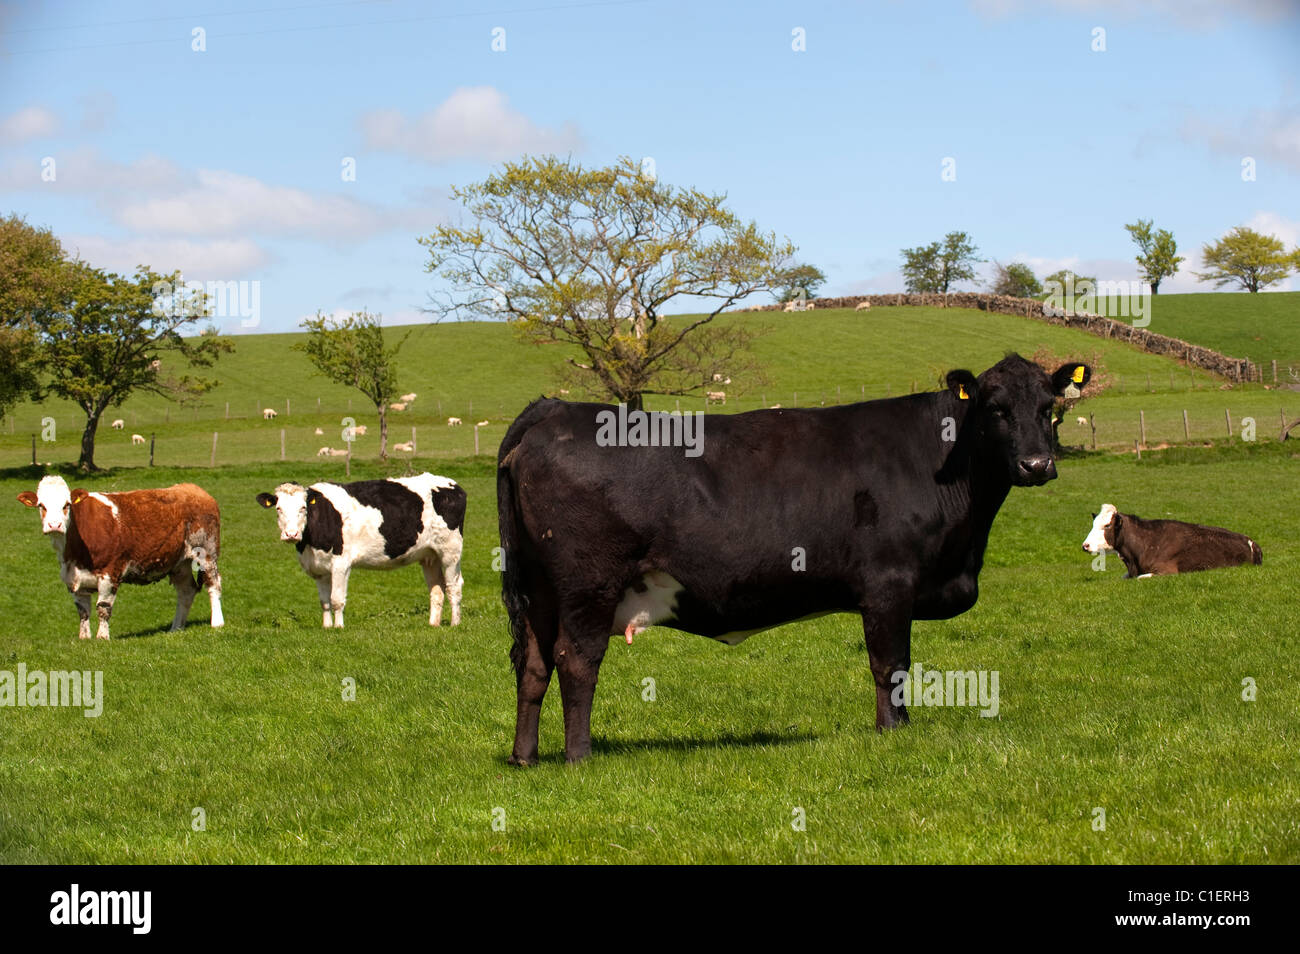 Suckler beef cattle grazing. Stock Photo